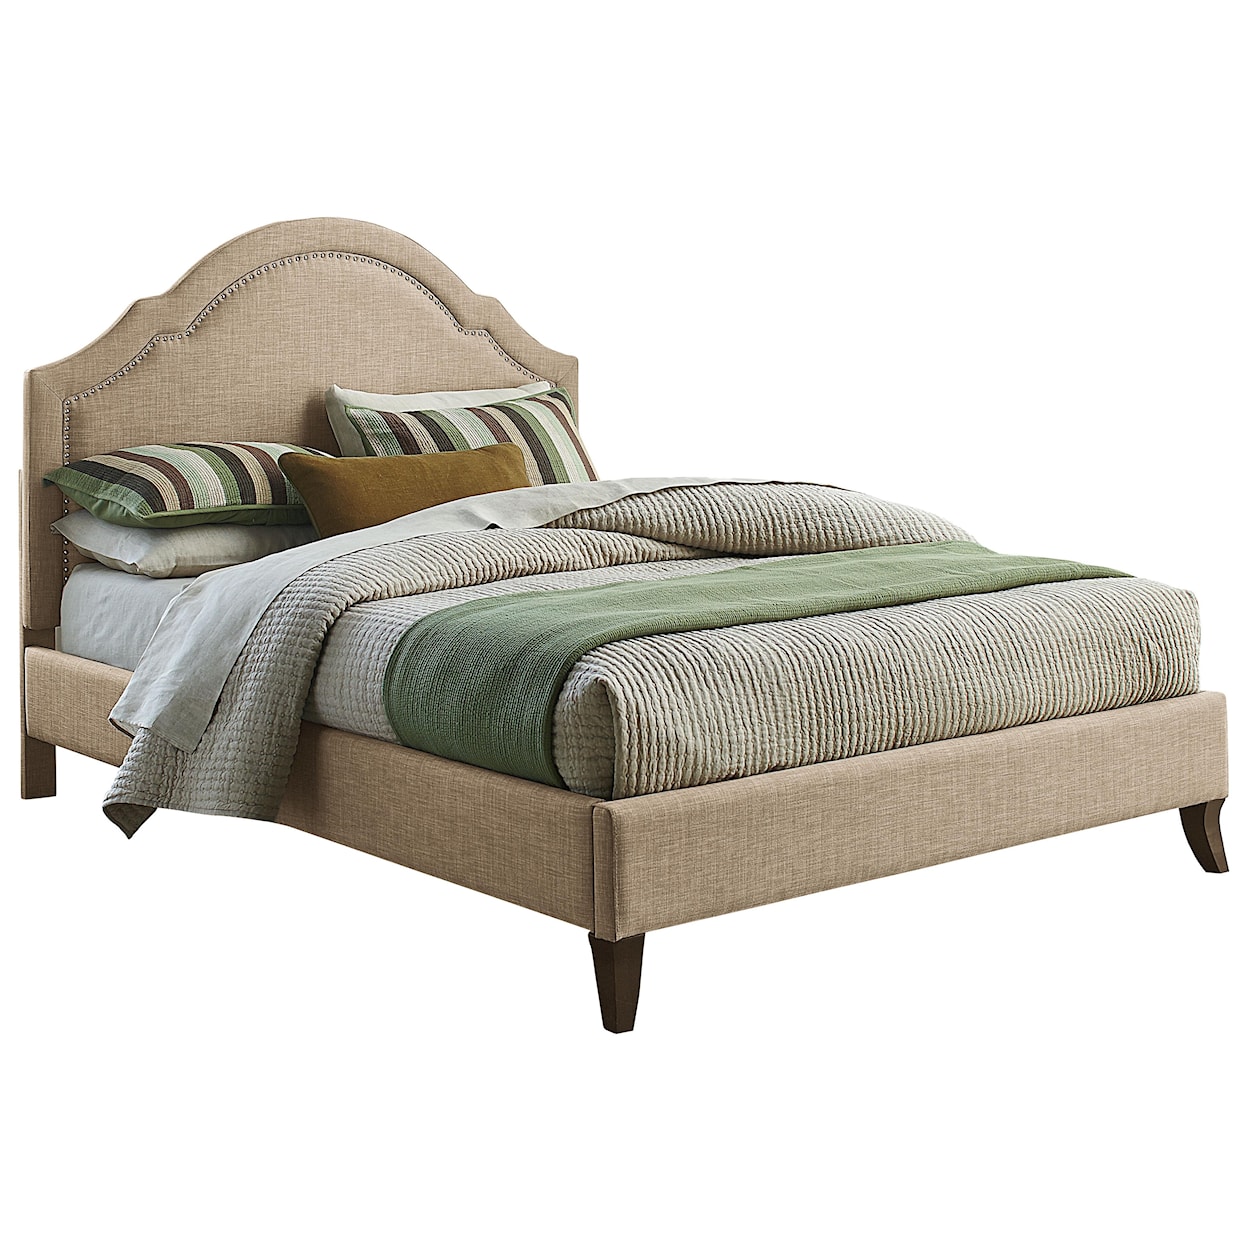 Standard Furniture Simplicity King Upholstered Platform Bed